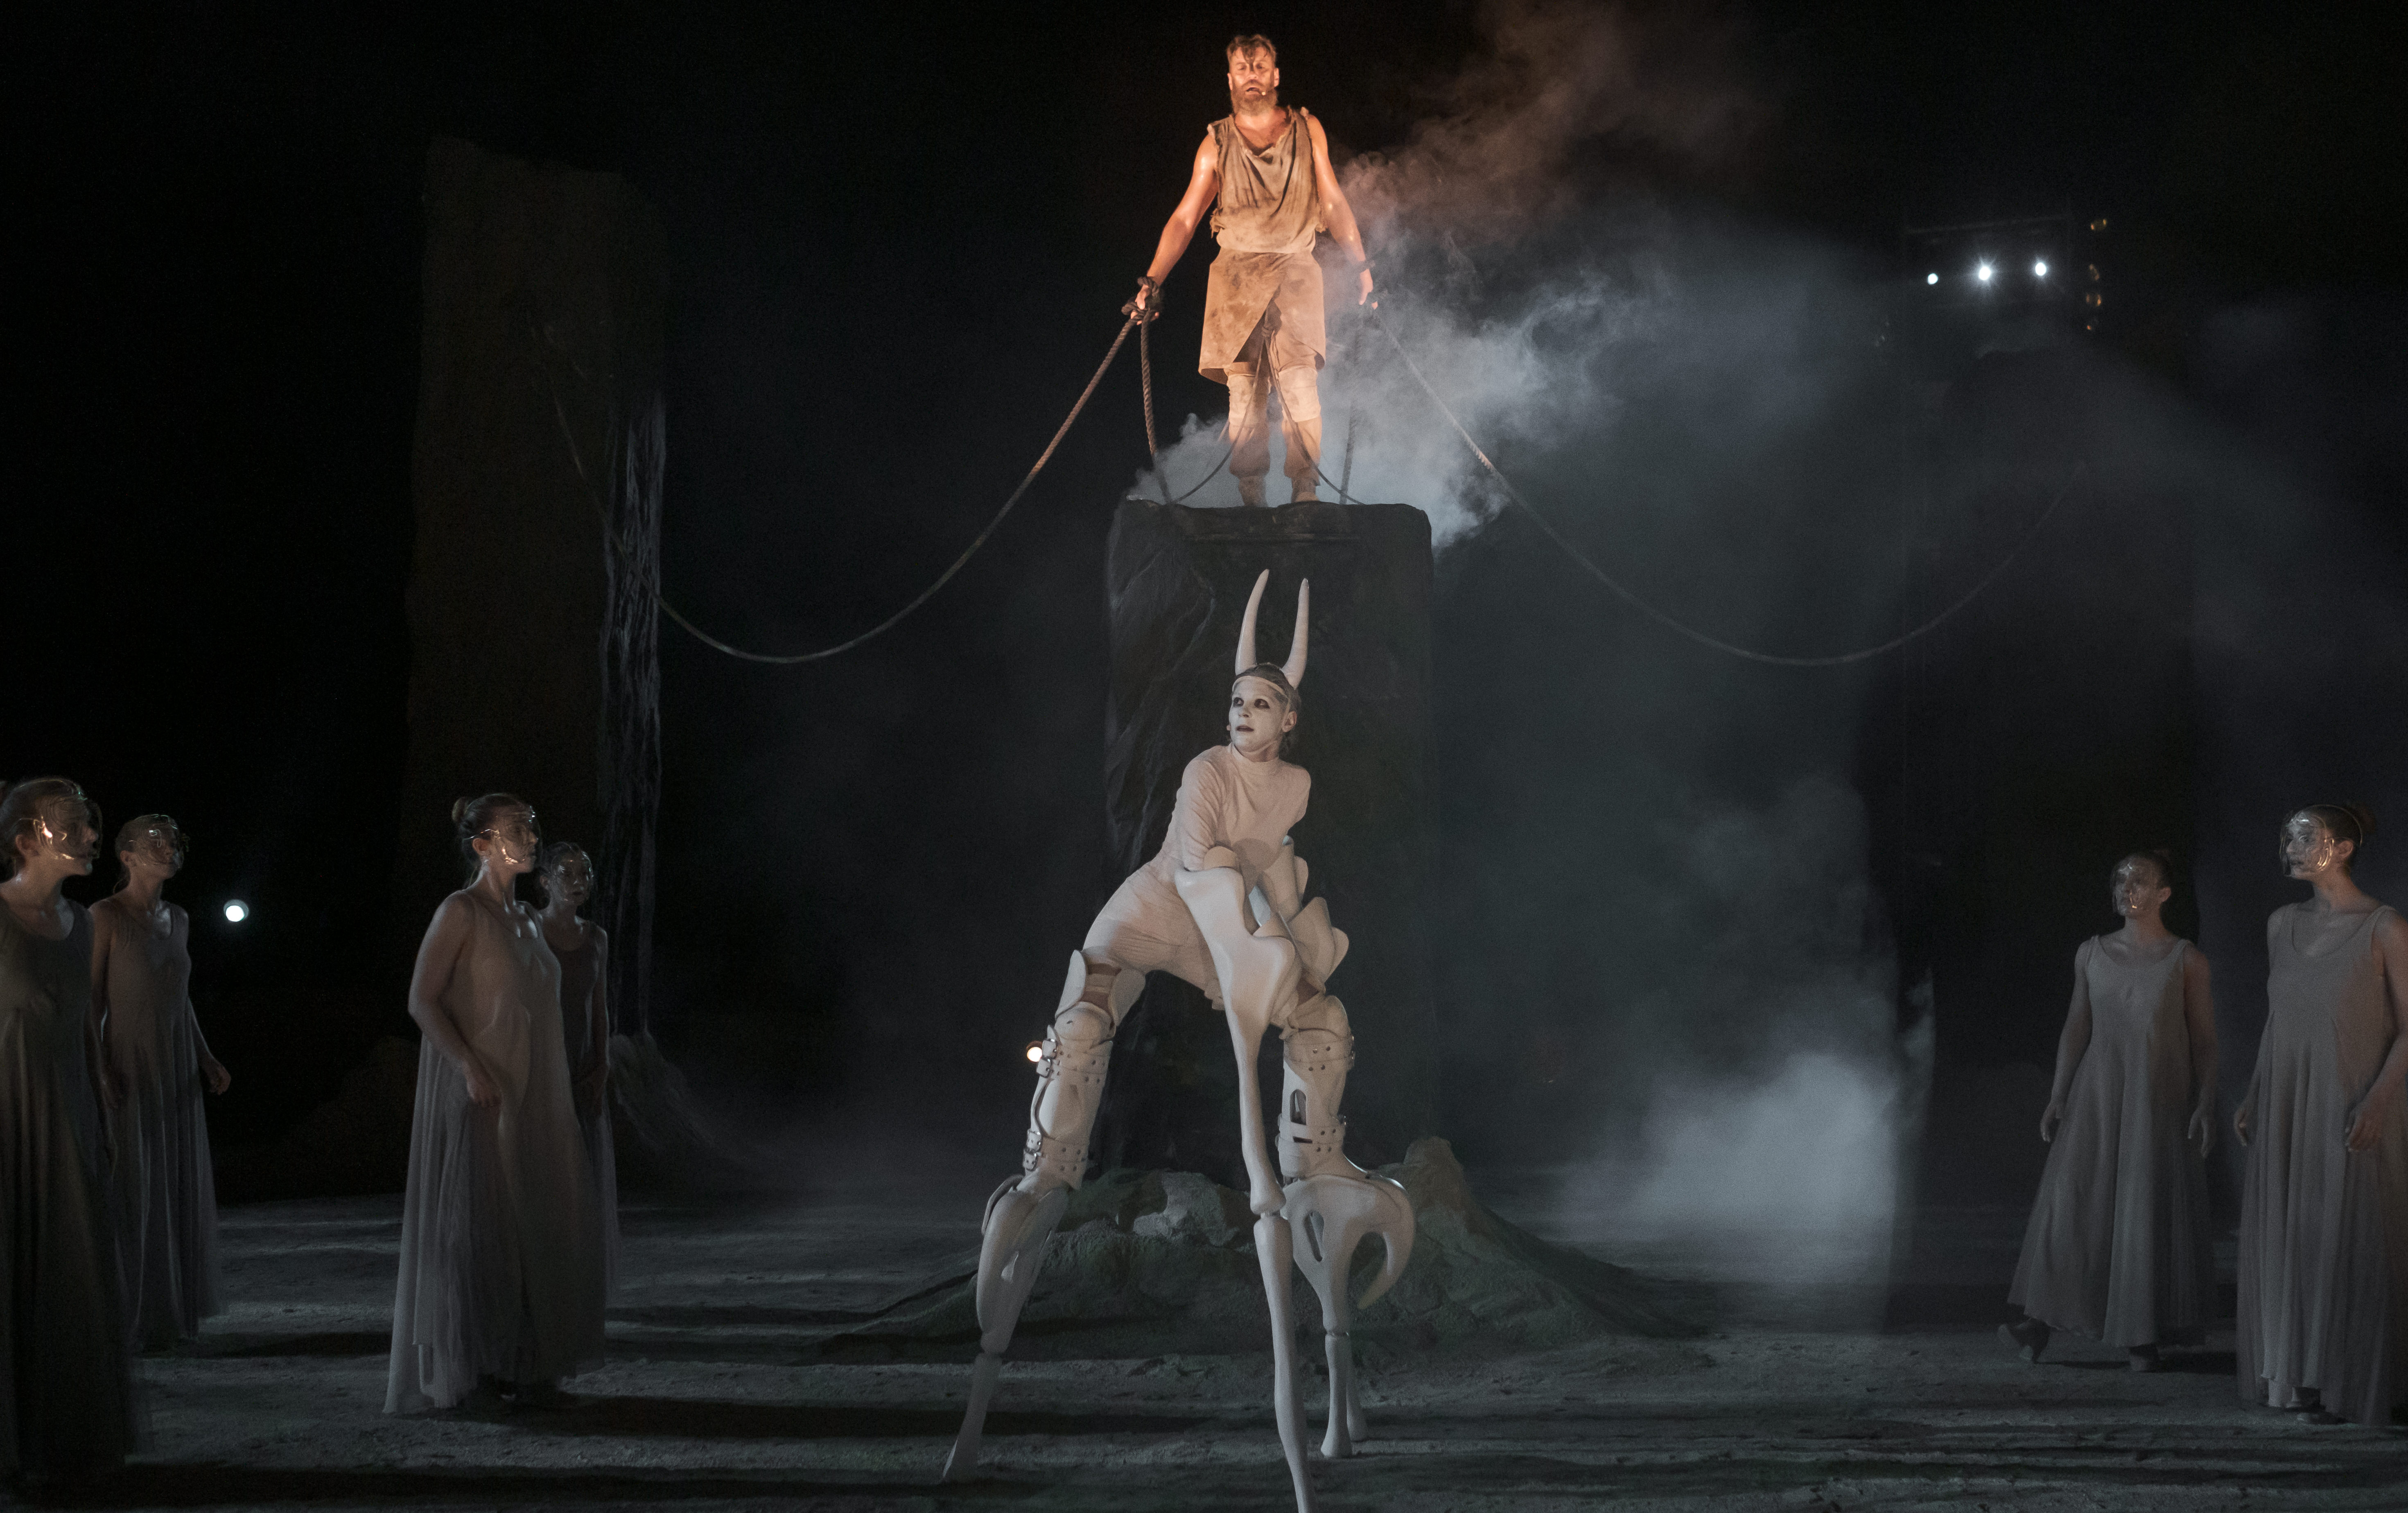 Io (Iro Bezou) in her spectacular costume on stilts